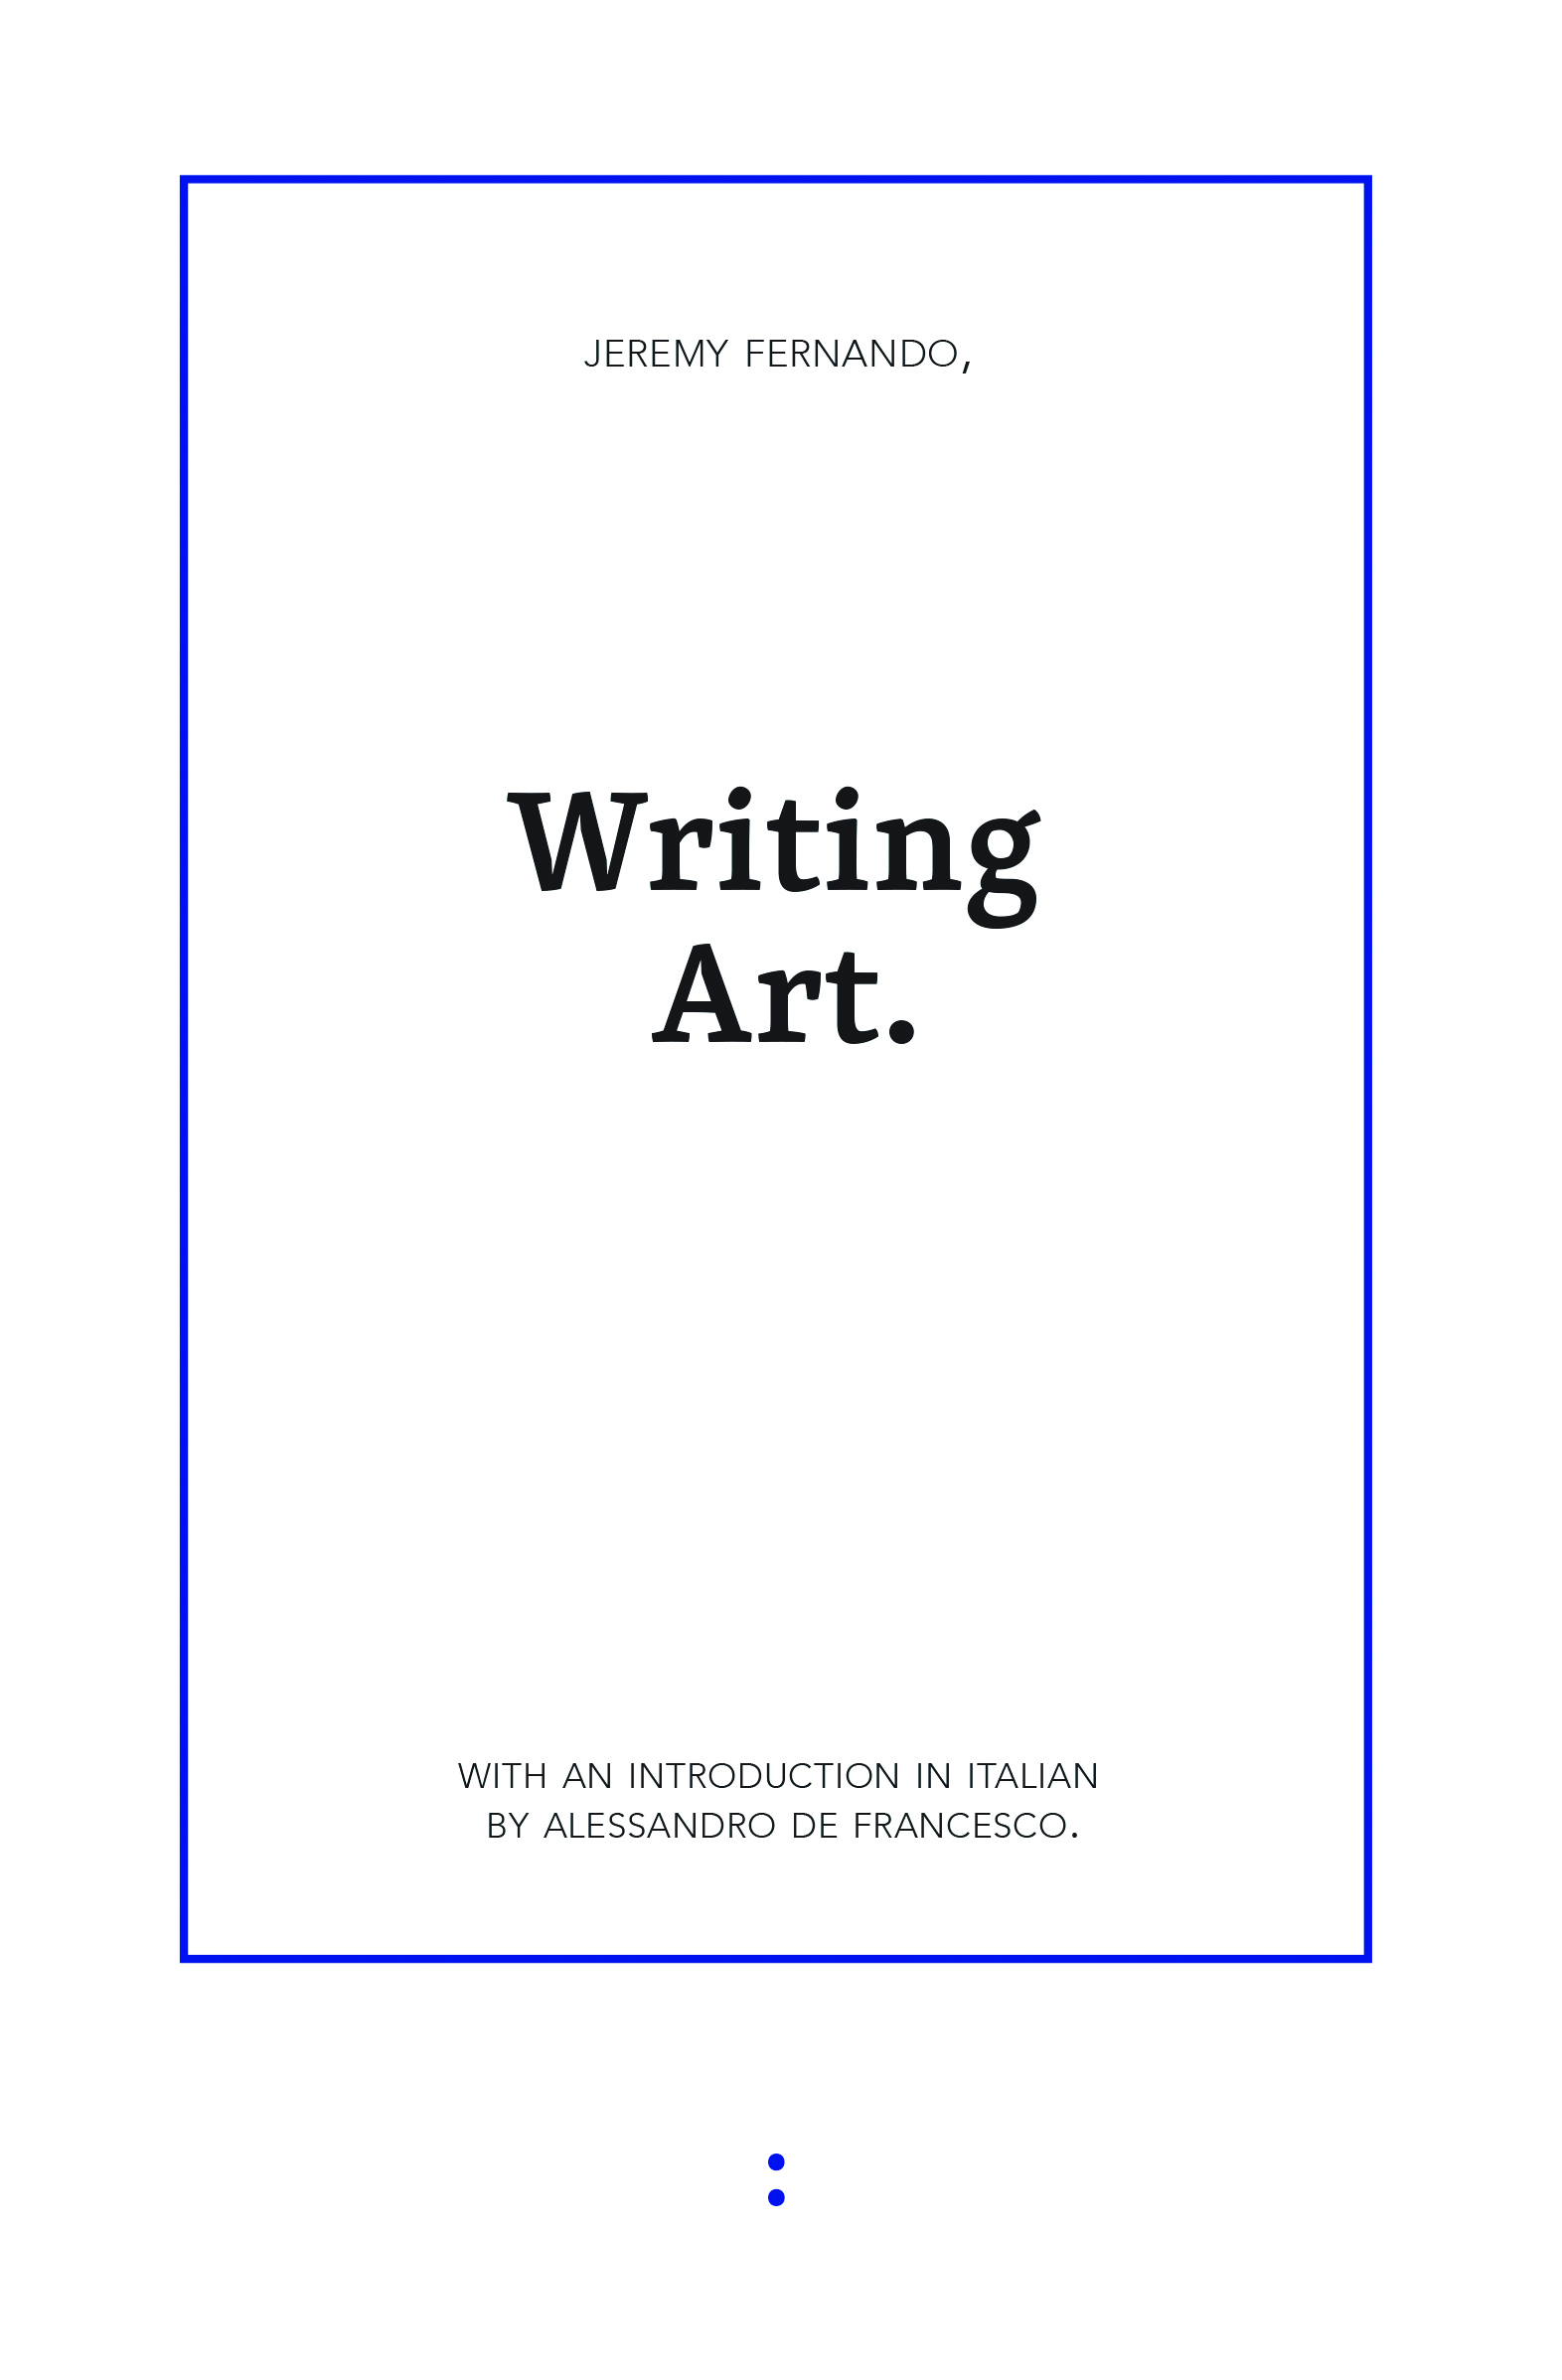 Writing Art (punctum books, 2015)